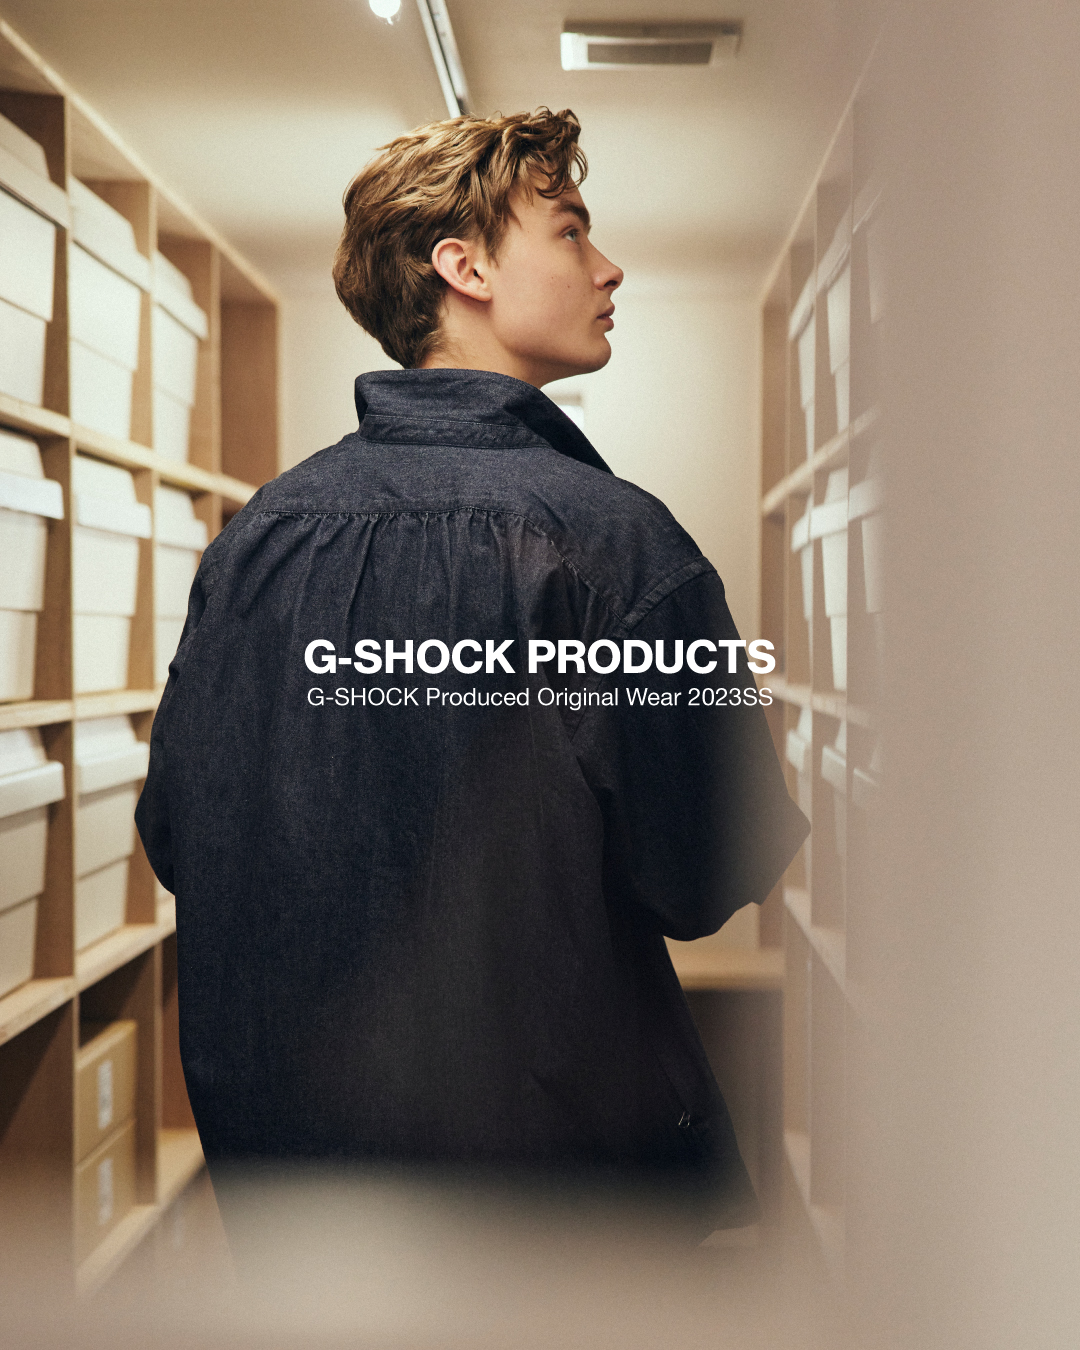 G-SHOCKのライフスタイルグッズを展開する“G-SHOCK PRODUCTS “CORDURA Military collection” 第3弾が3/24 発売 (Gショック ジーショック)